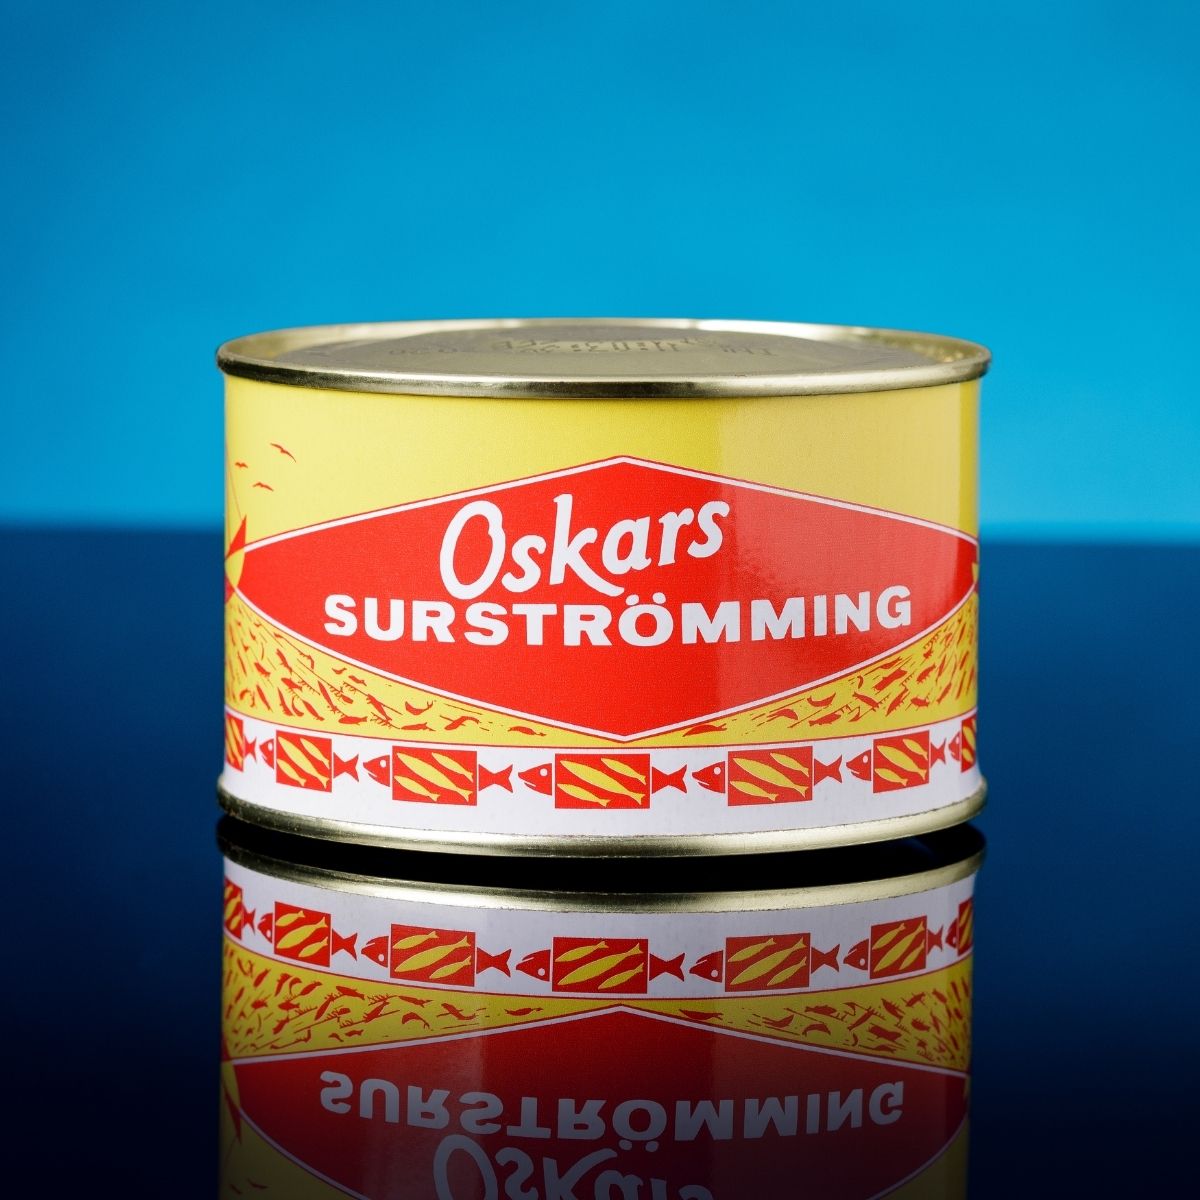 Oskars (Fillets) ​Surströmming ​300 g - surstromming Swedish fish - Energy  snus